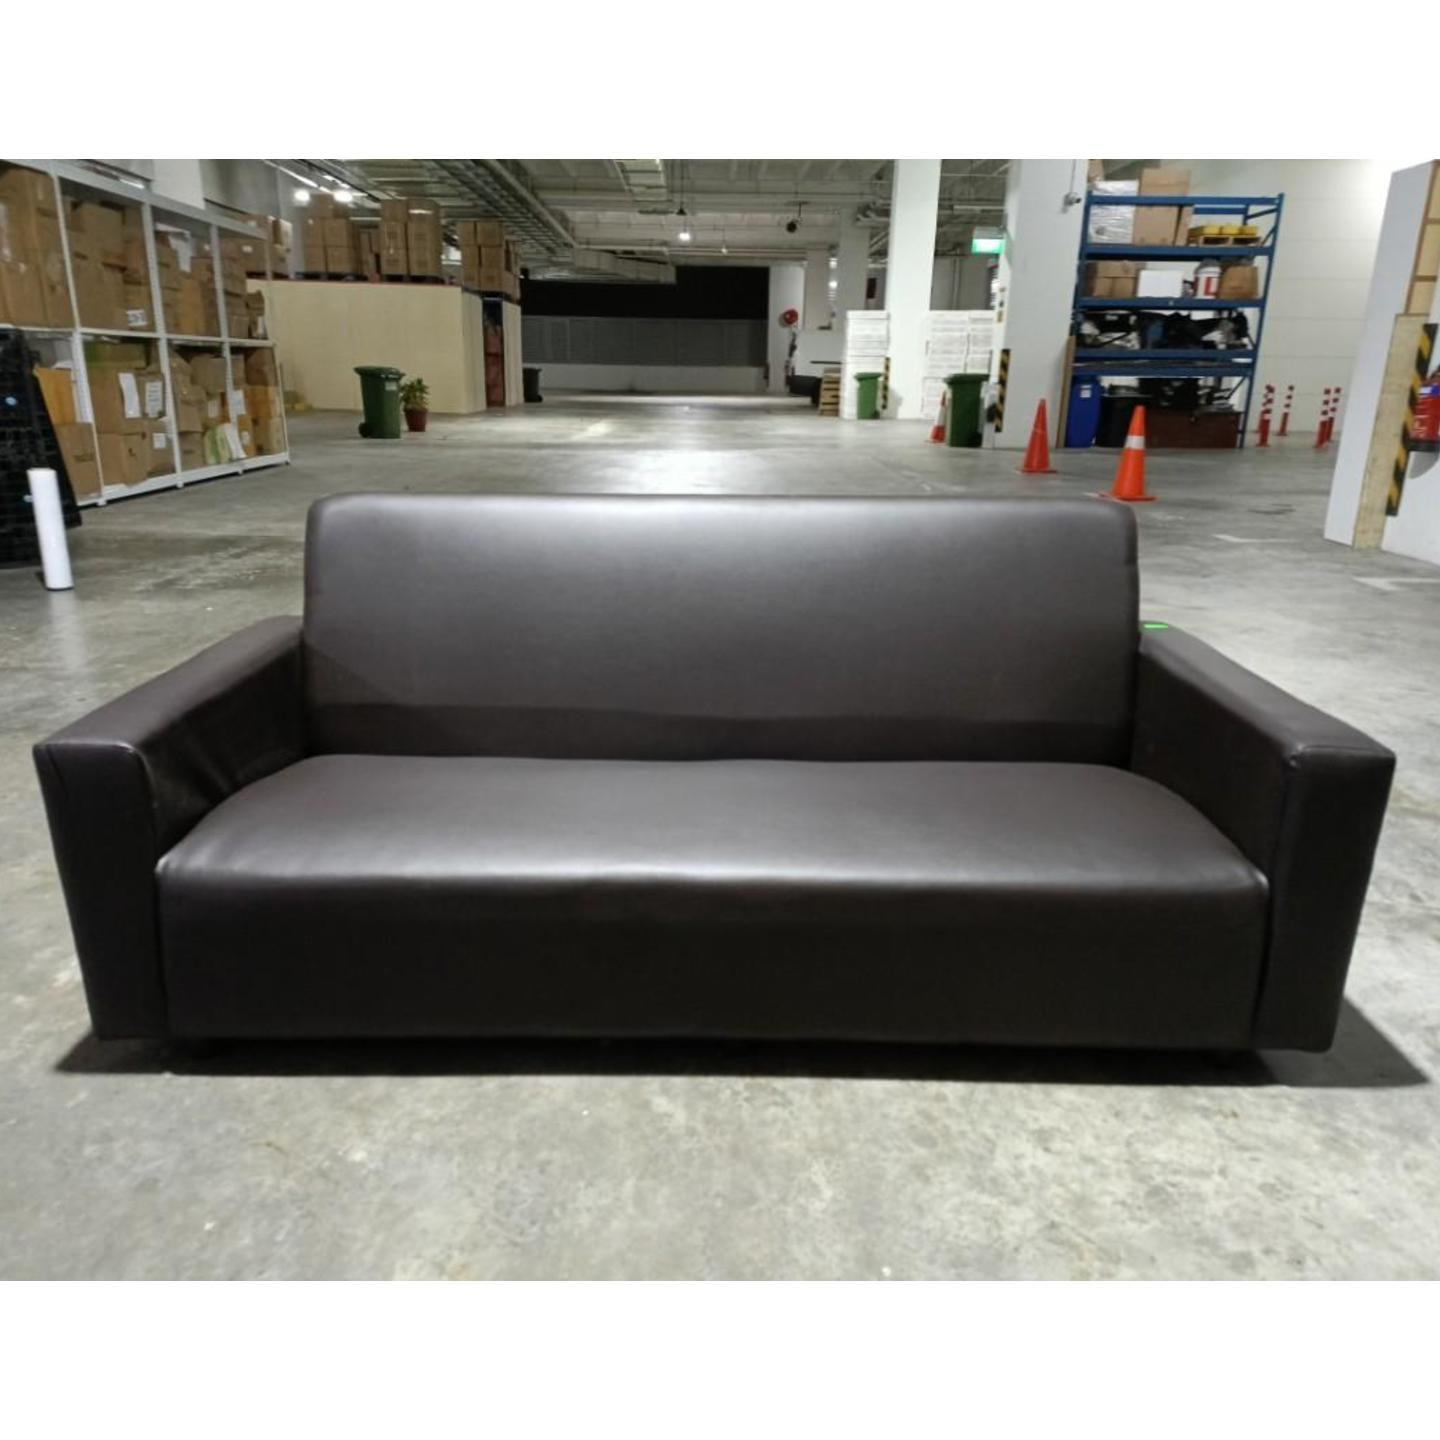 SANDLER 3 Seater Sofa in BROWN PVC